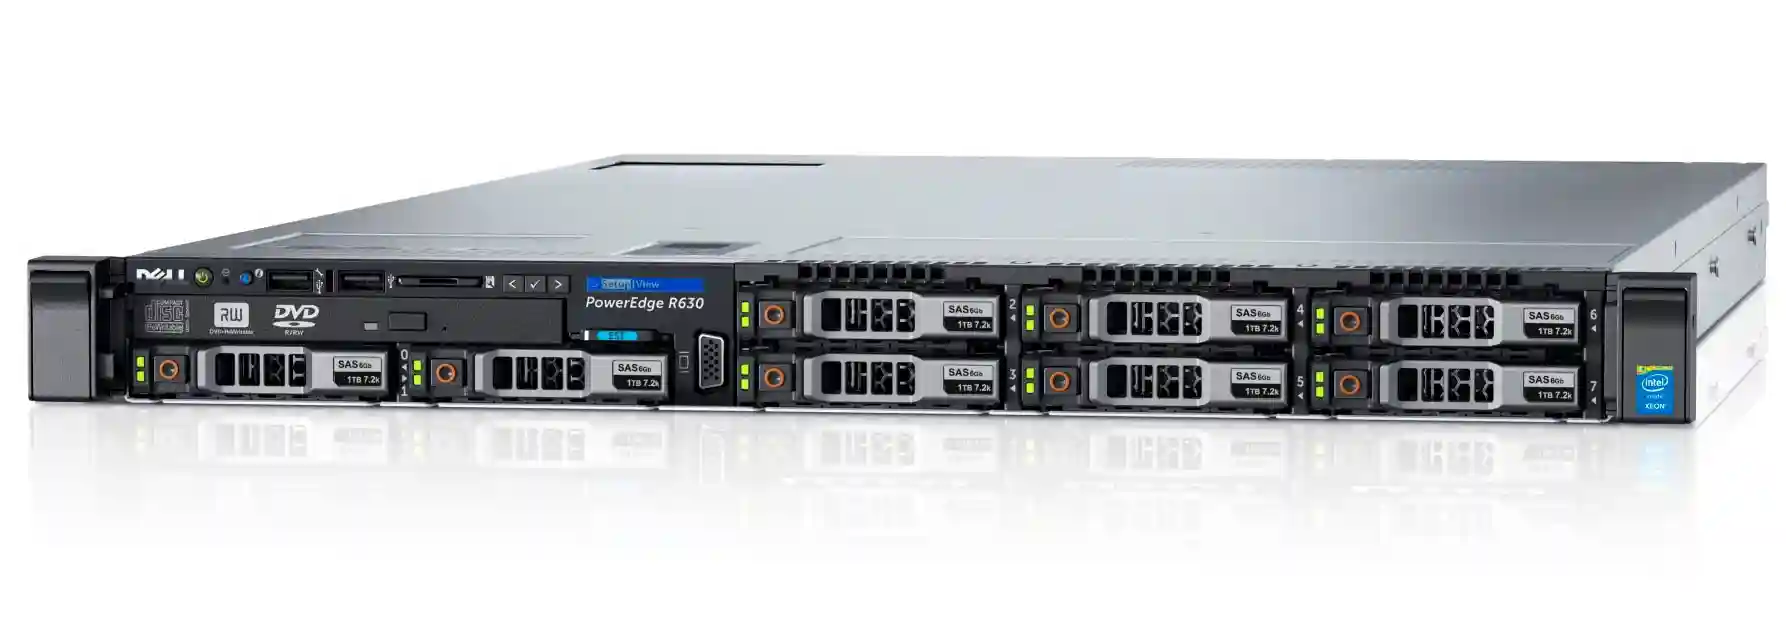 Серверы Dell PowerEdge R630 сетевой провайдер телефония вертикальный готовый удалённый свой обновление графический linux коммуникационный стоечный маленький